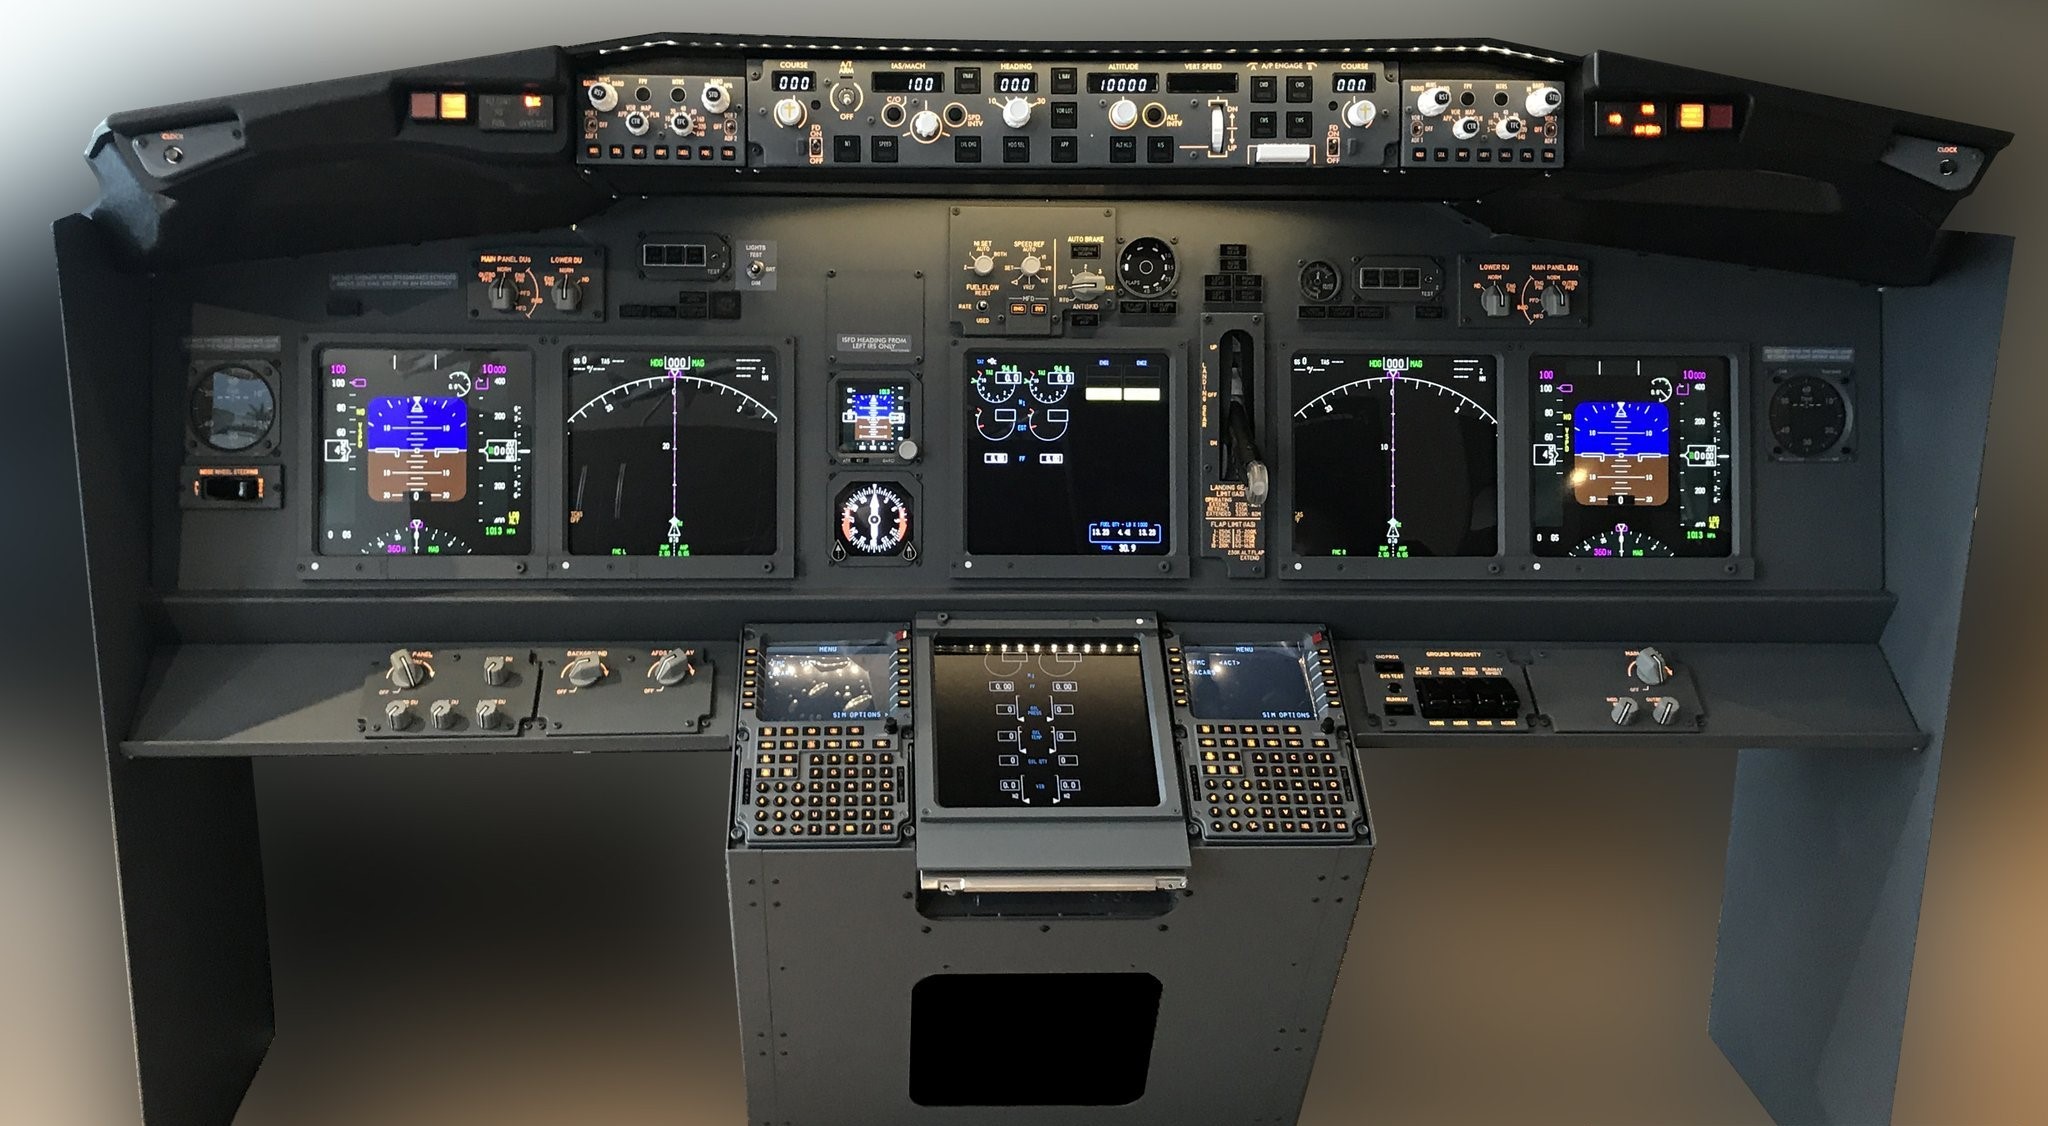 JetMax系列 飞行模拟器 方案书-914 